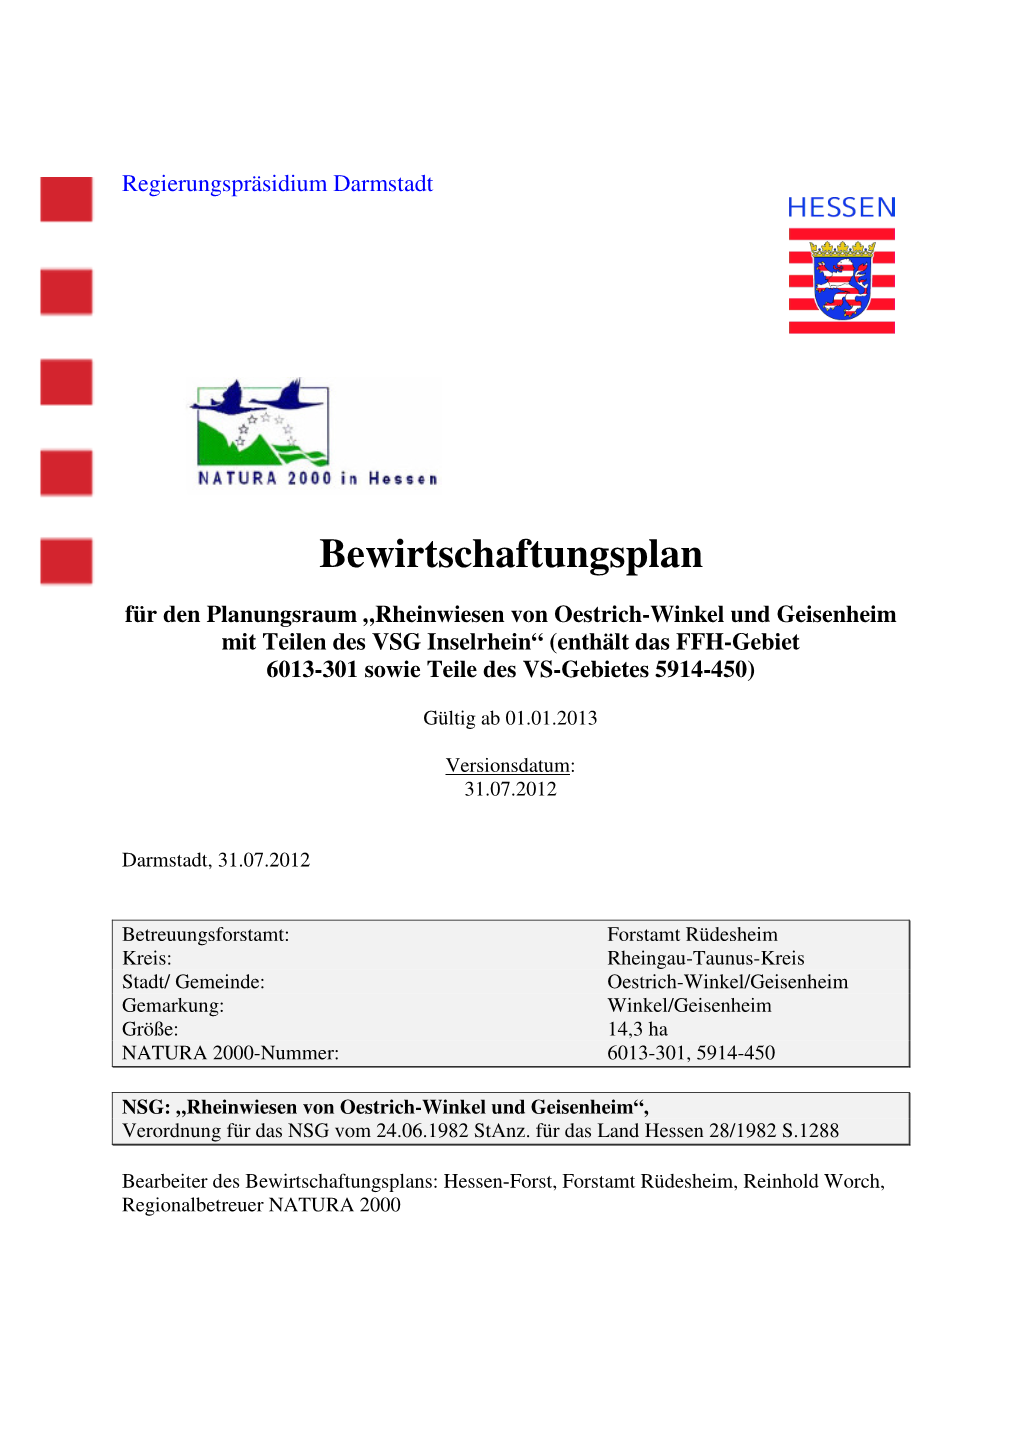 6013-301 Rheinwiesen Von Oestrich-Winkel Und Geisenheim